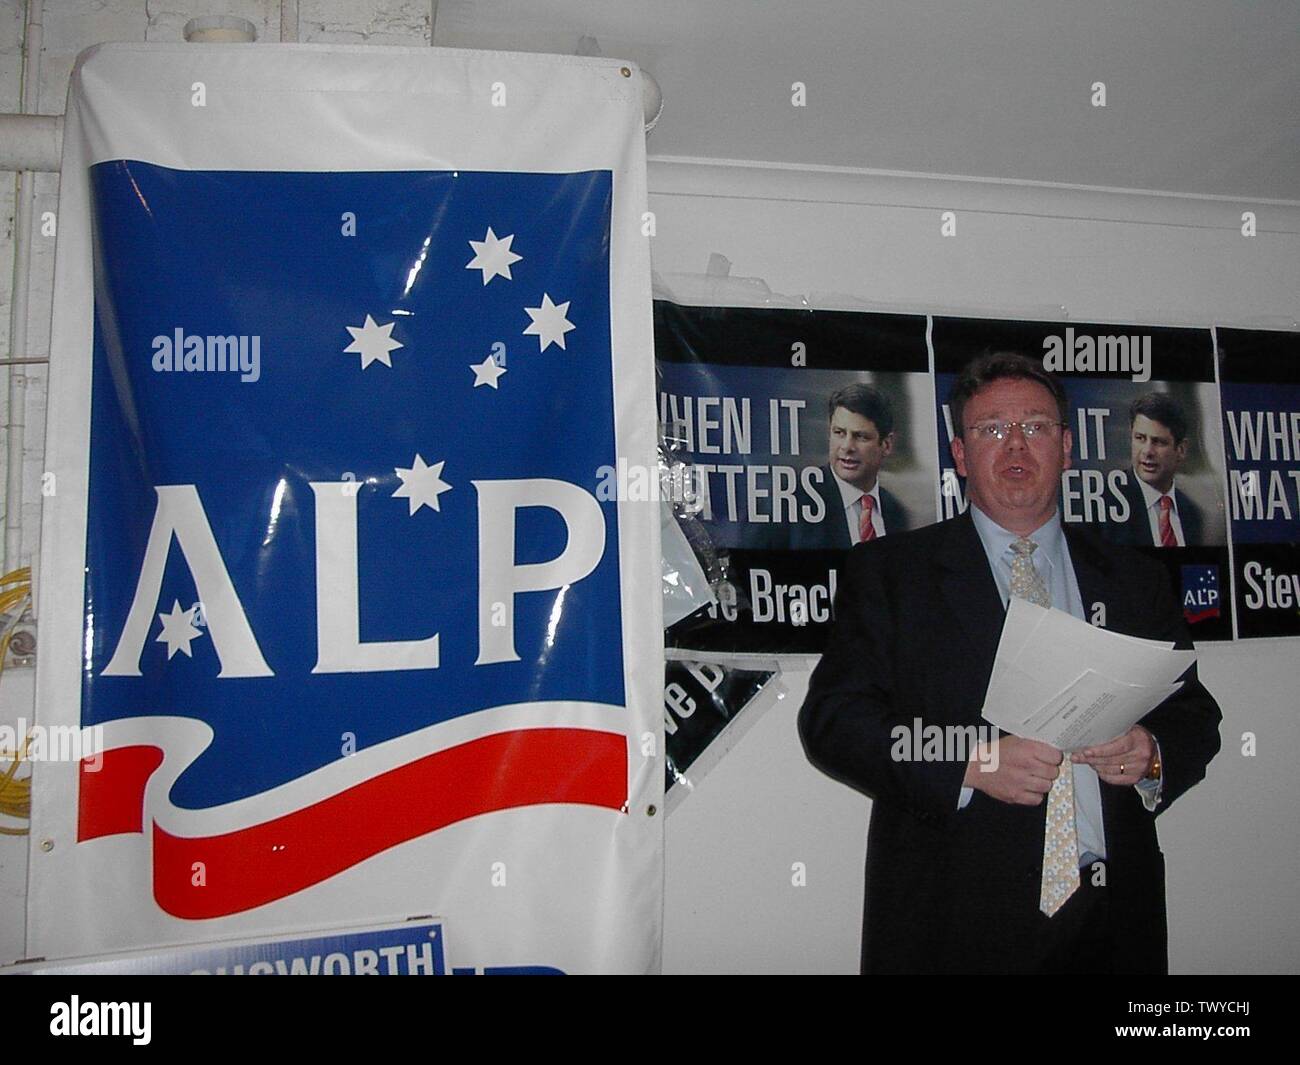 Evan Thornley in occasione di un rally del Partito laburista australiano nel novembre 2006.; 25 novembre 2006 (data di caricamento originale); Trasferito da en.pedia a Commons da Bidgee utilizzando CommonsHelper.; Adam Carr su English pedia; Foto Stock